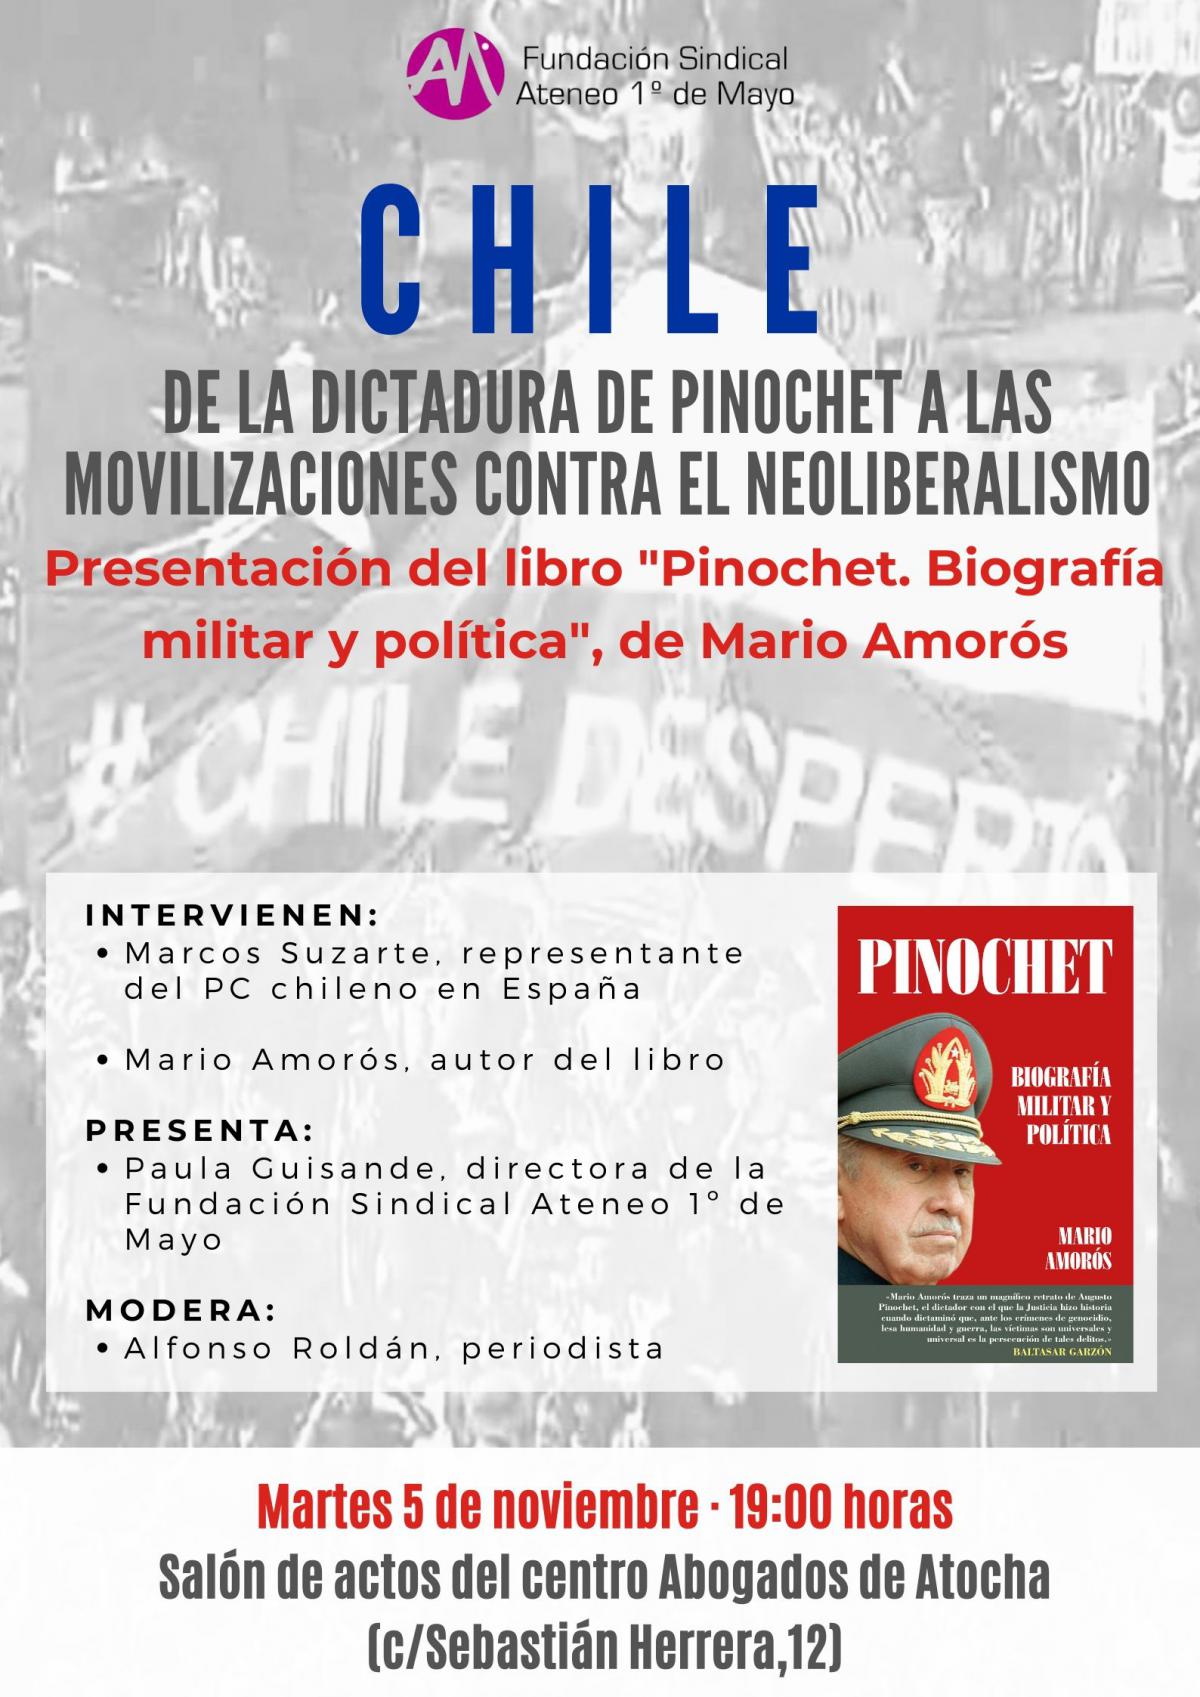 Presentaci�n del libro: "Pinochet, biografia militar y pol�tica" de Mario Amor�s